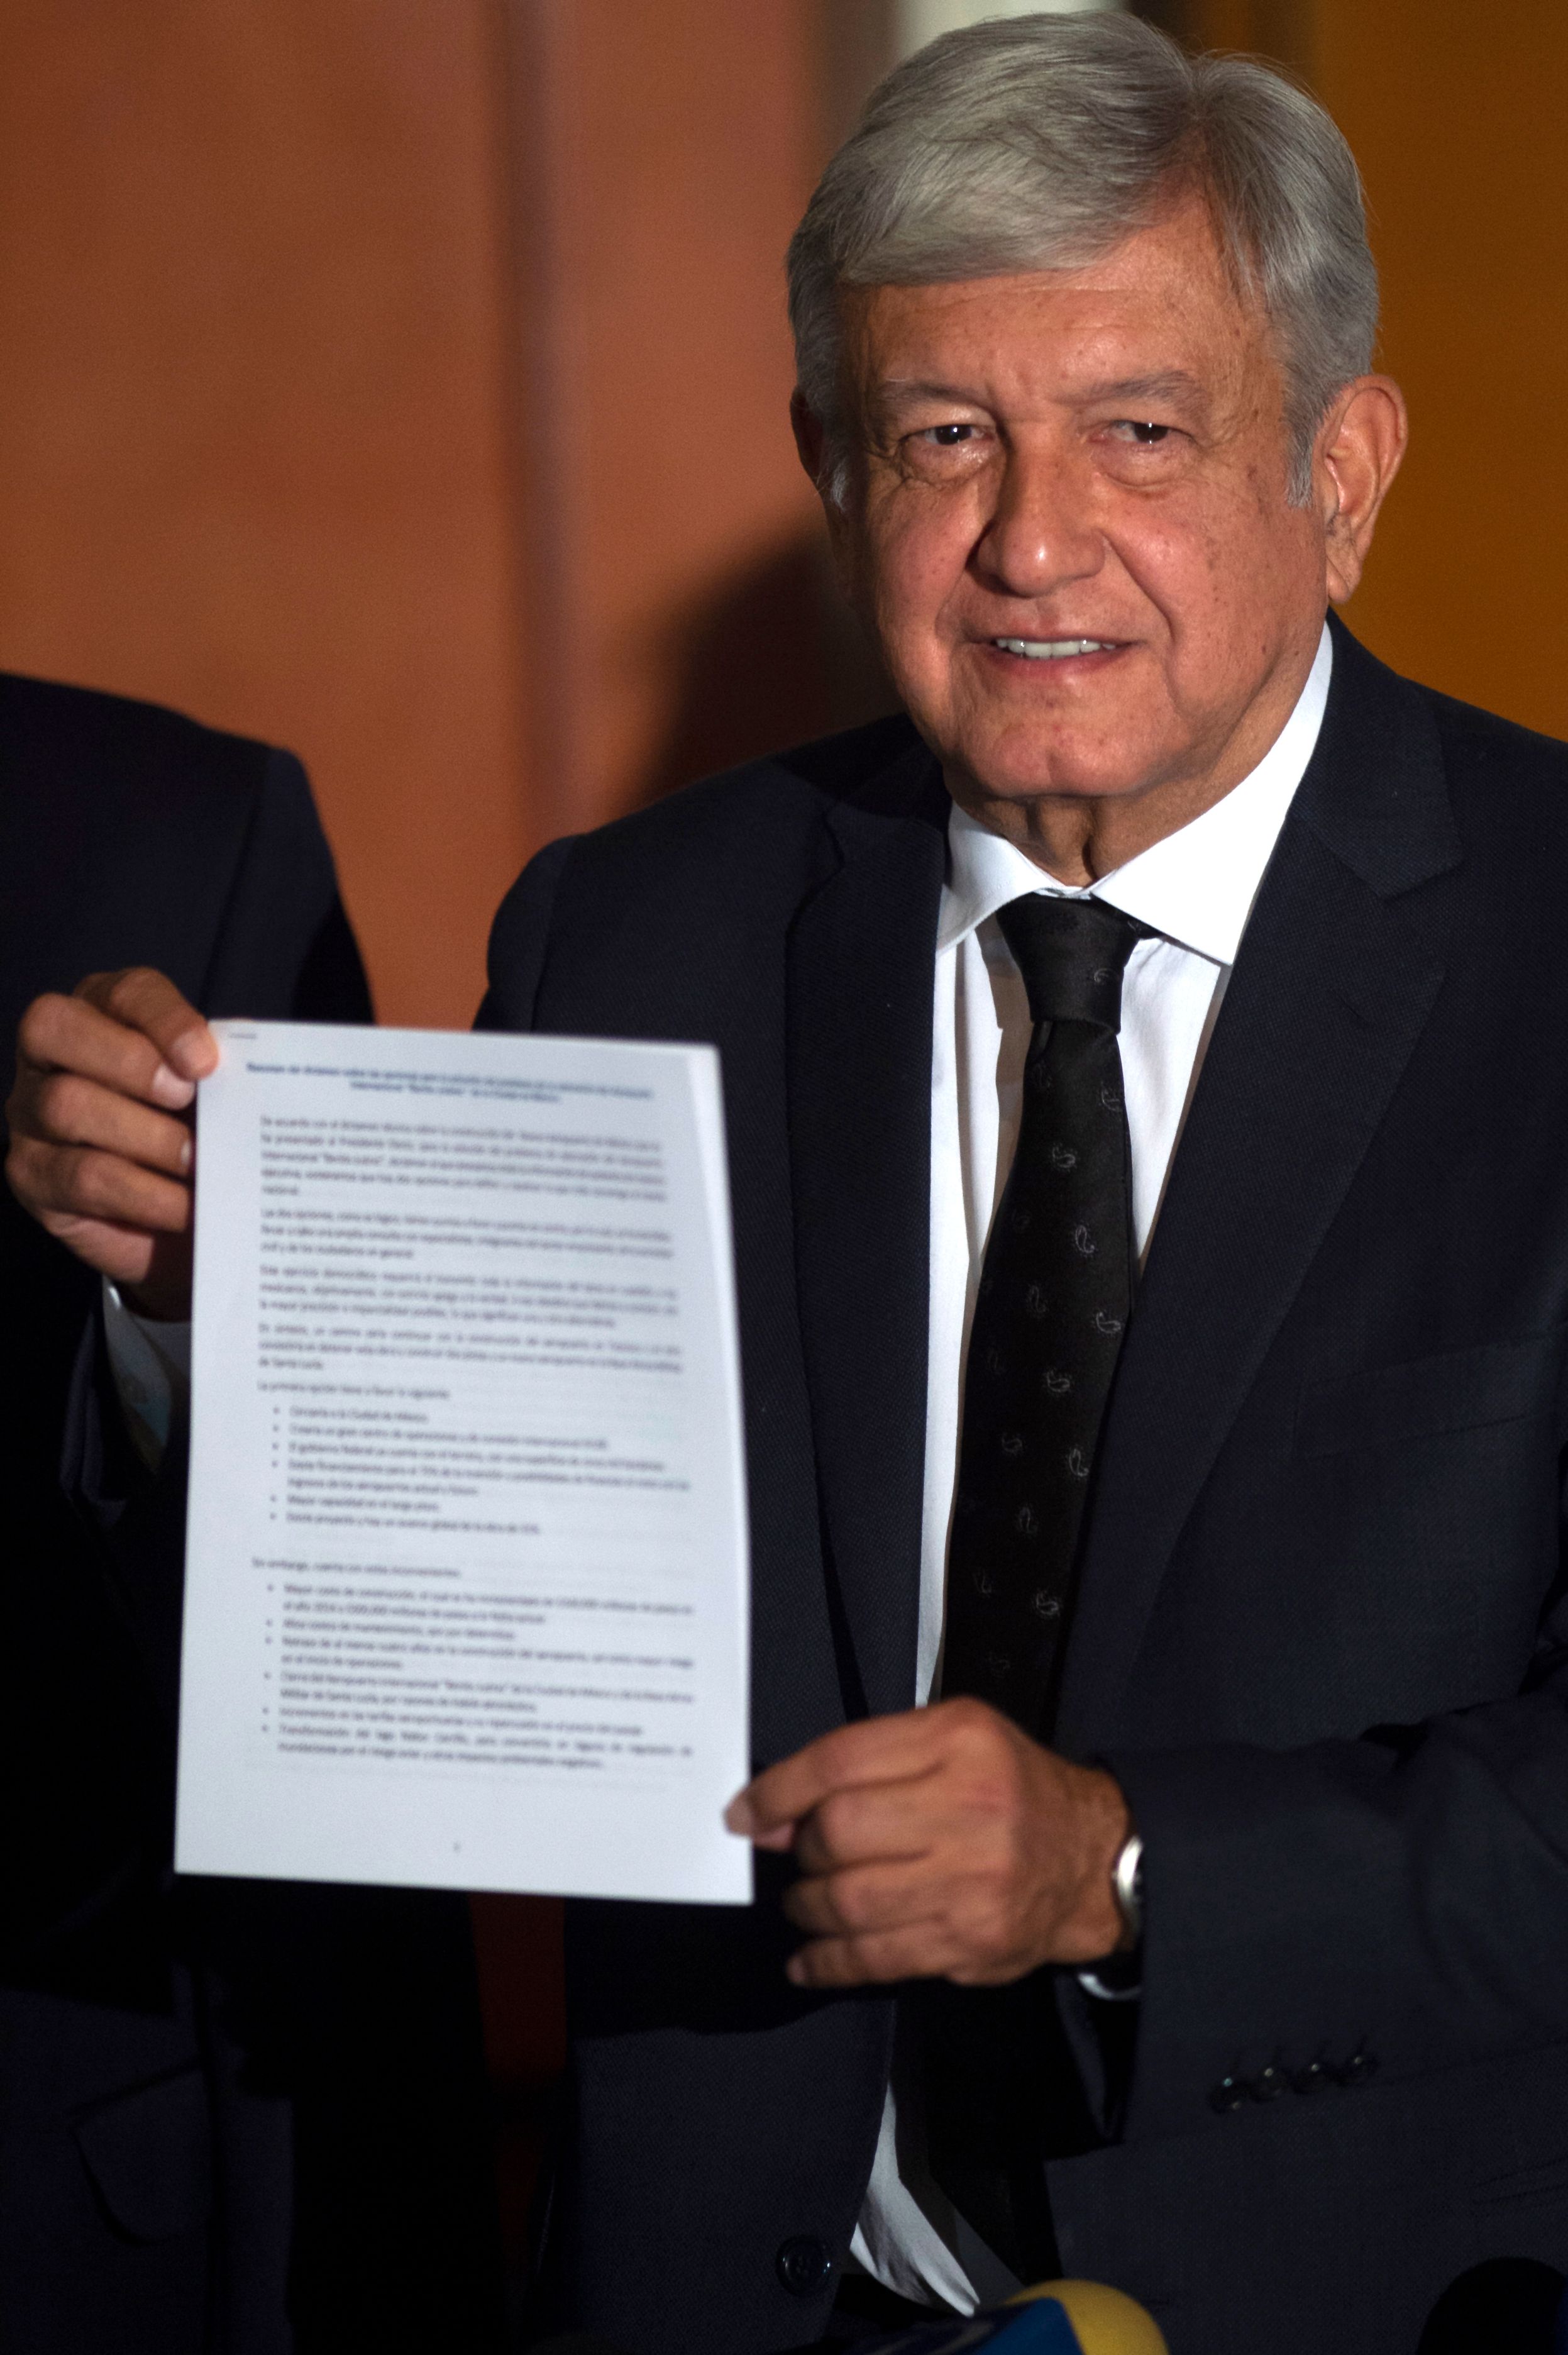 أندريس مانويل لوبيز أوبرادور الرئيس المكسيكى المنتخب